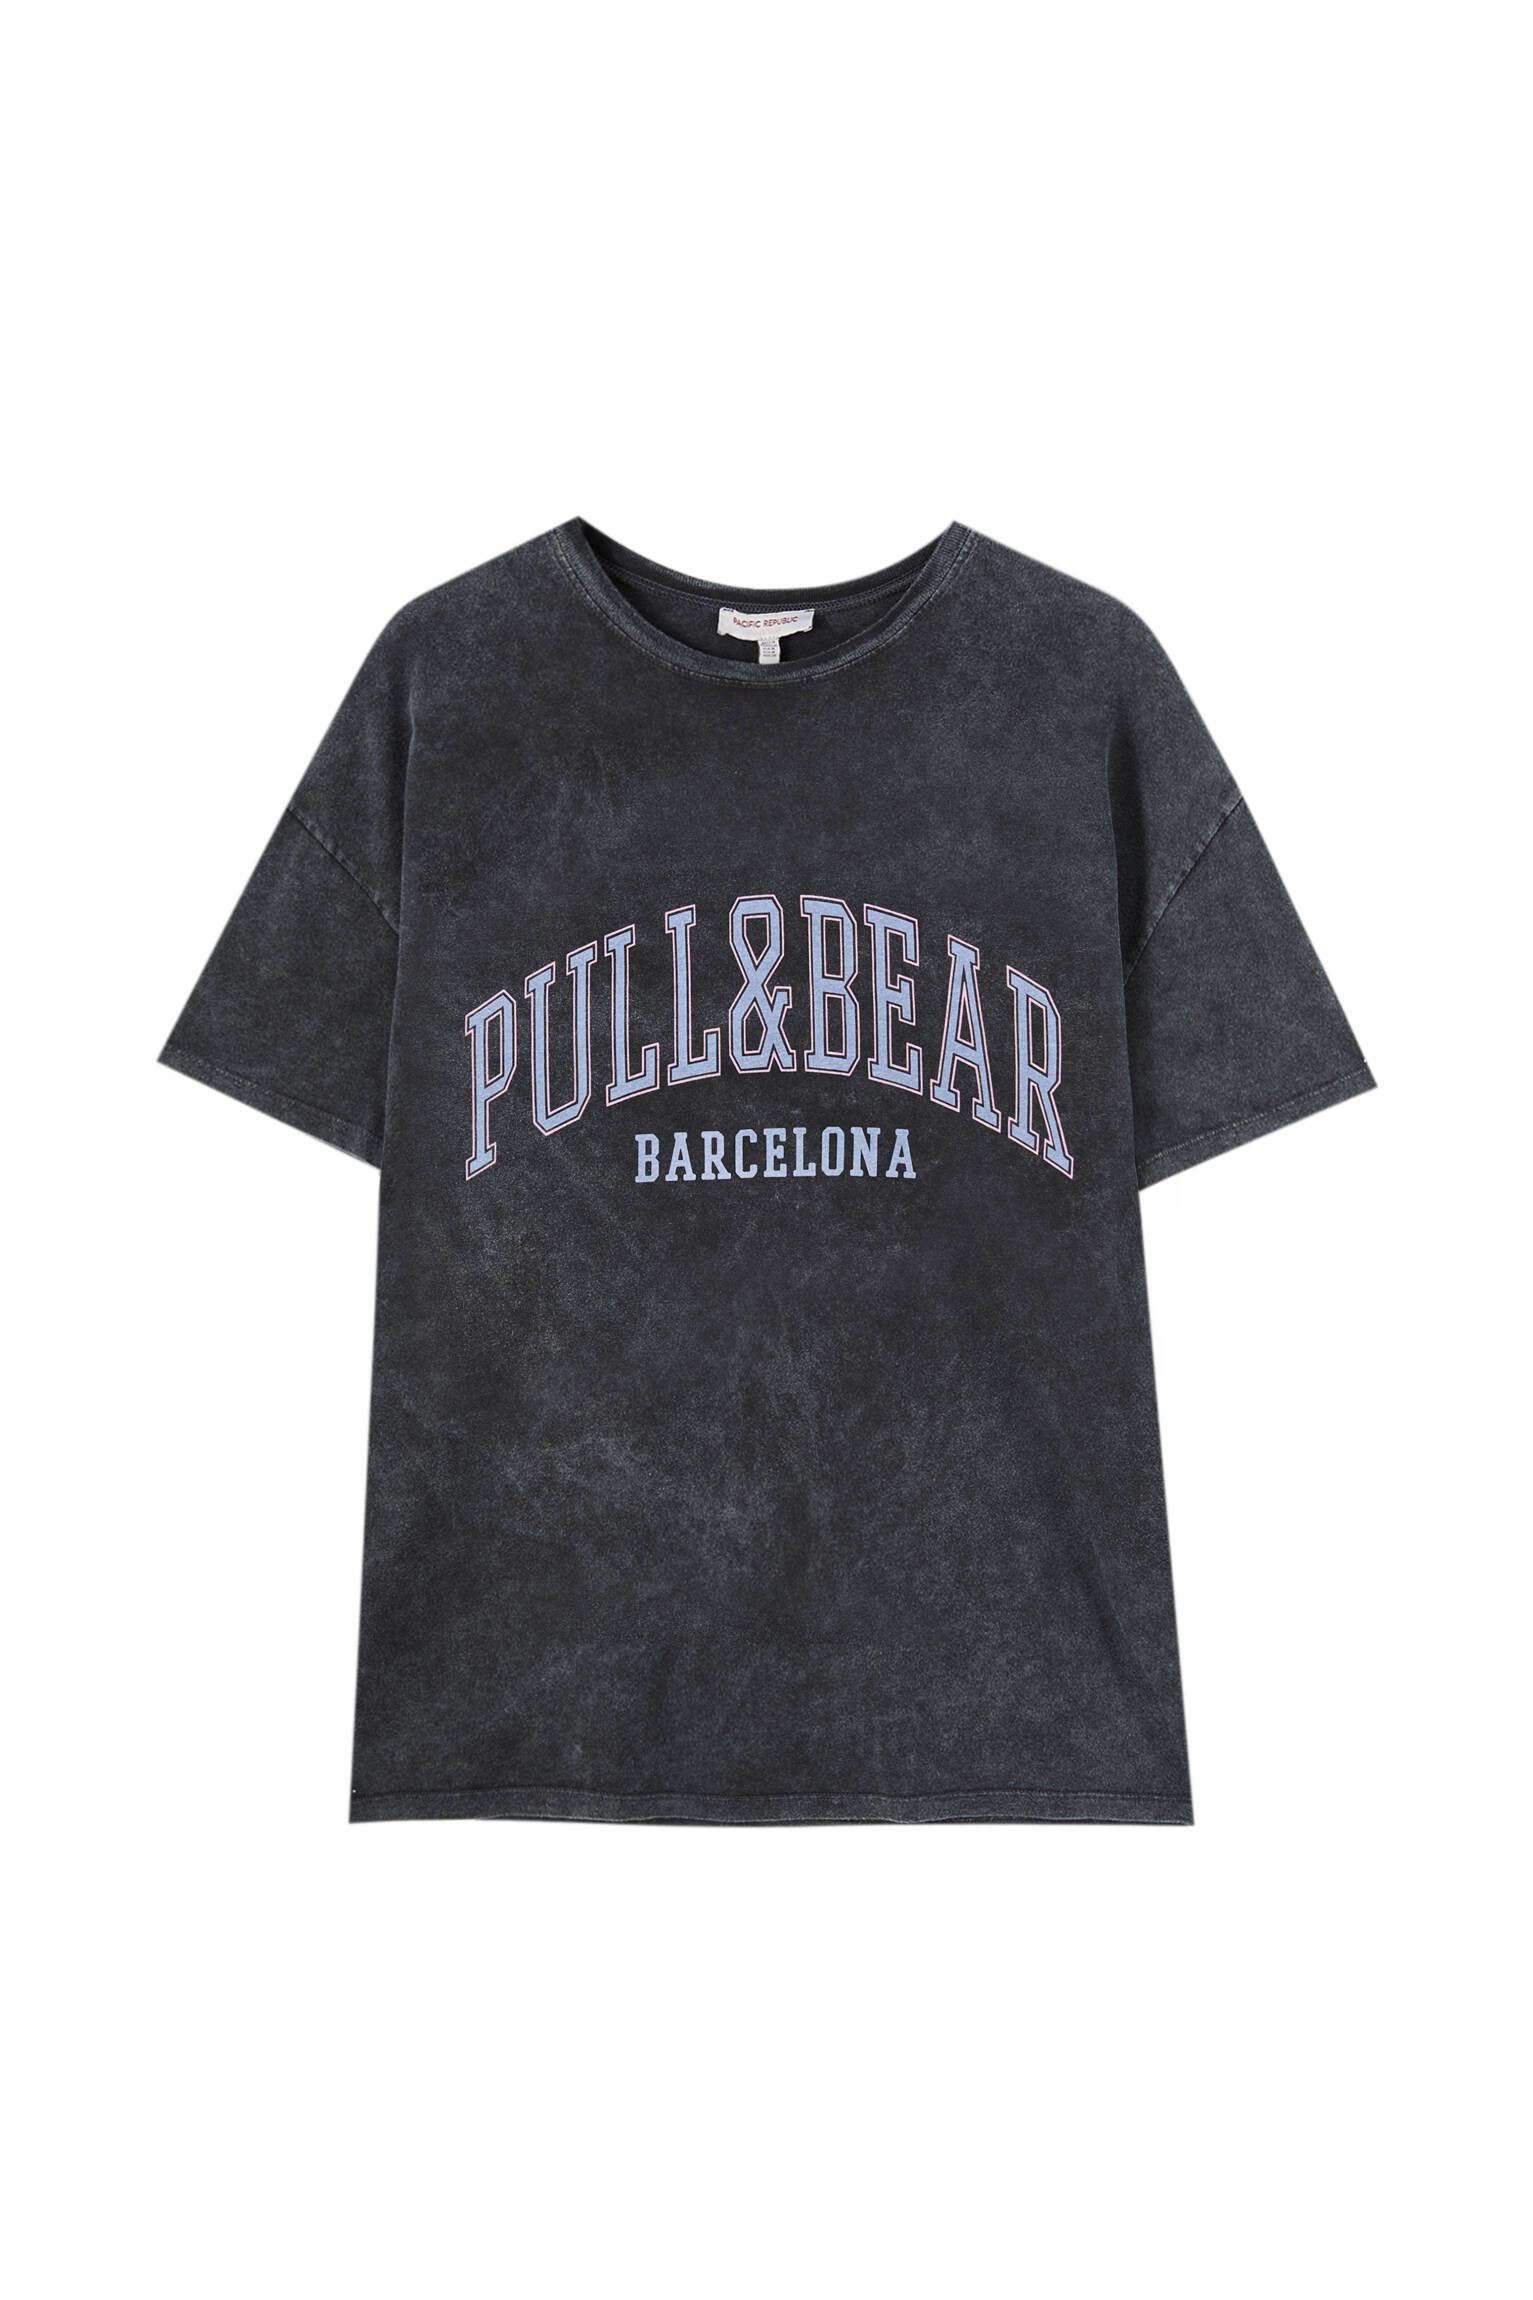 Pull&bear Femme T-shirt 100 % Coton à Col Rond Et Manches Courtes, Avec Logo Pull&bear Et Inscription Barcelona Contrastante Sur La Poitrine. Noir DÉlavÉ M